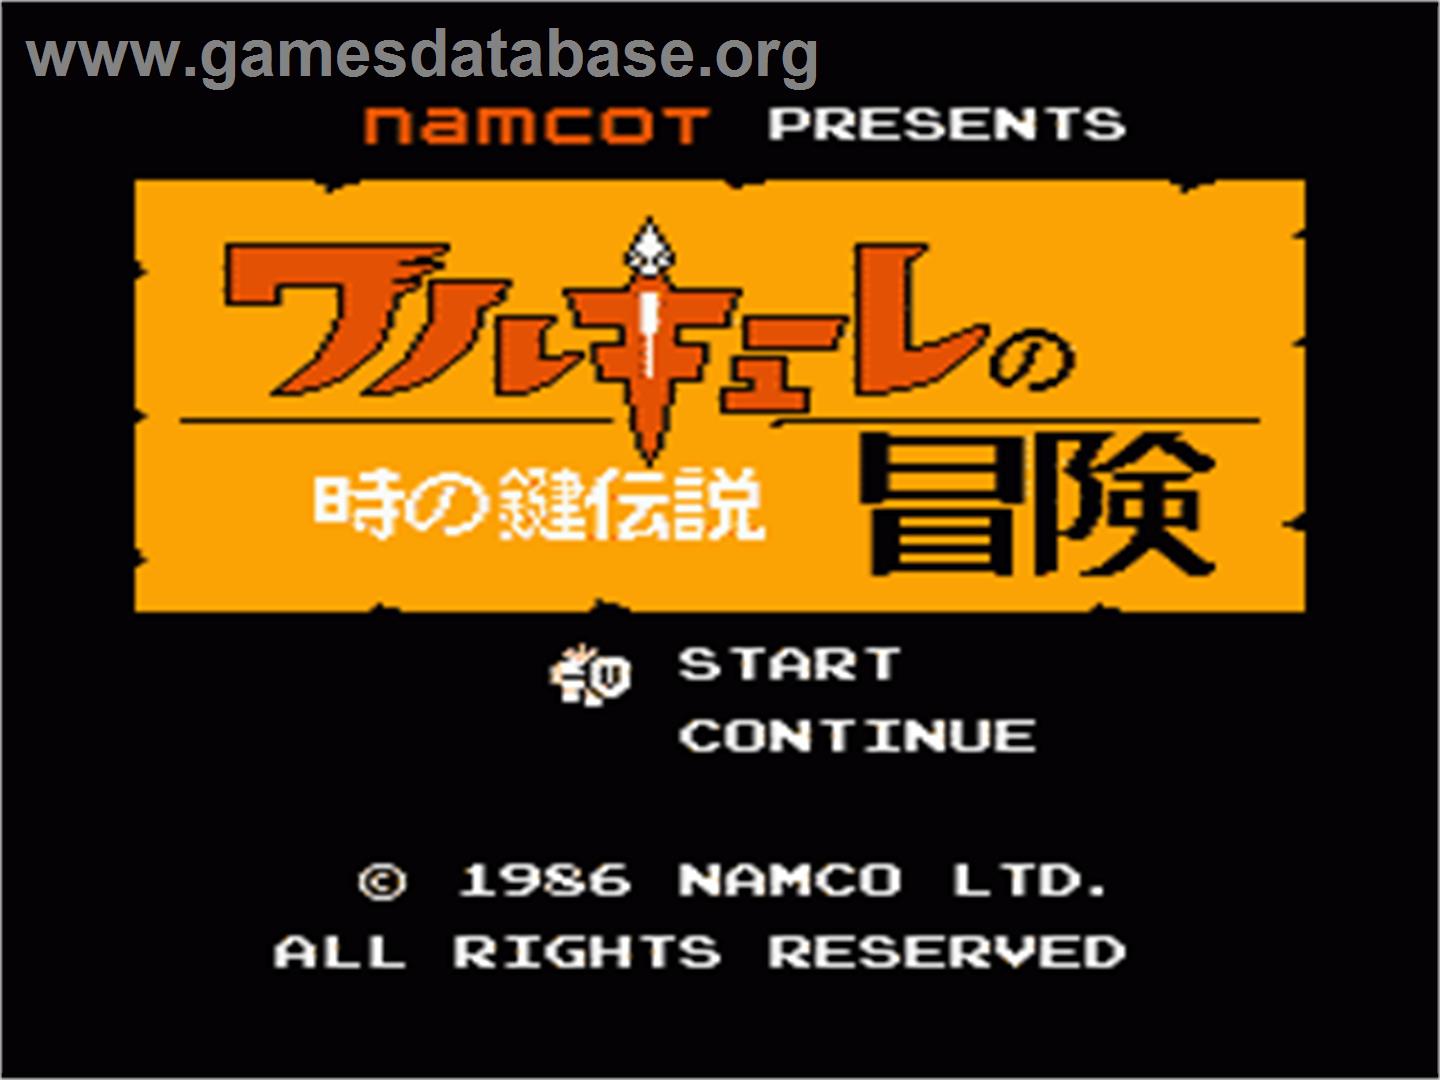 Valkyrie no Bouken: Toki no Kagi Densetsu - Nintendo NES - Artwork - Title Screen